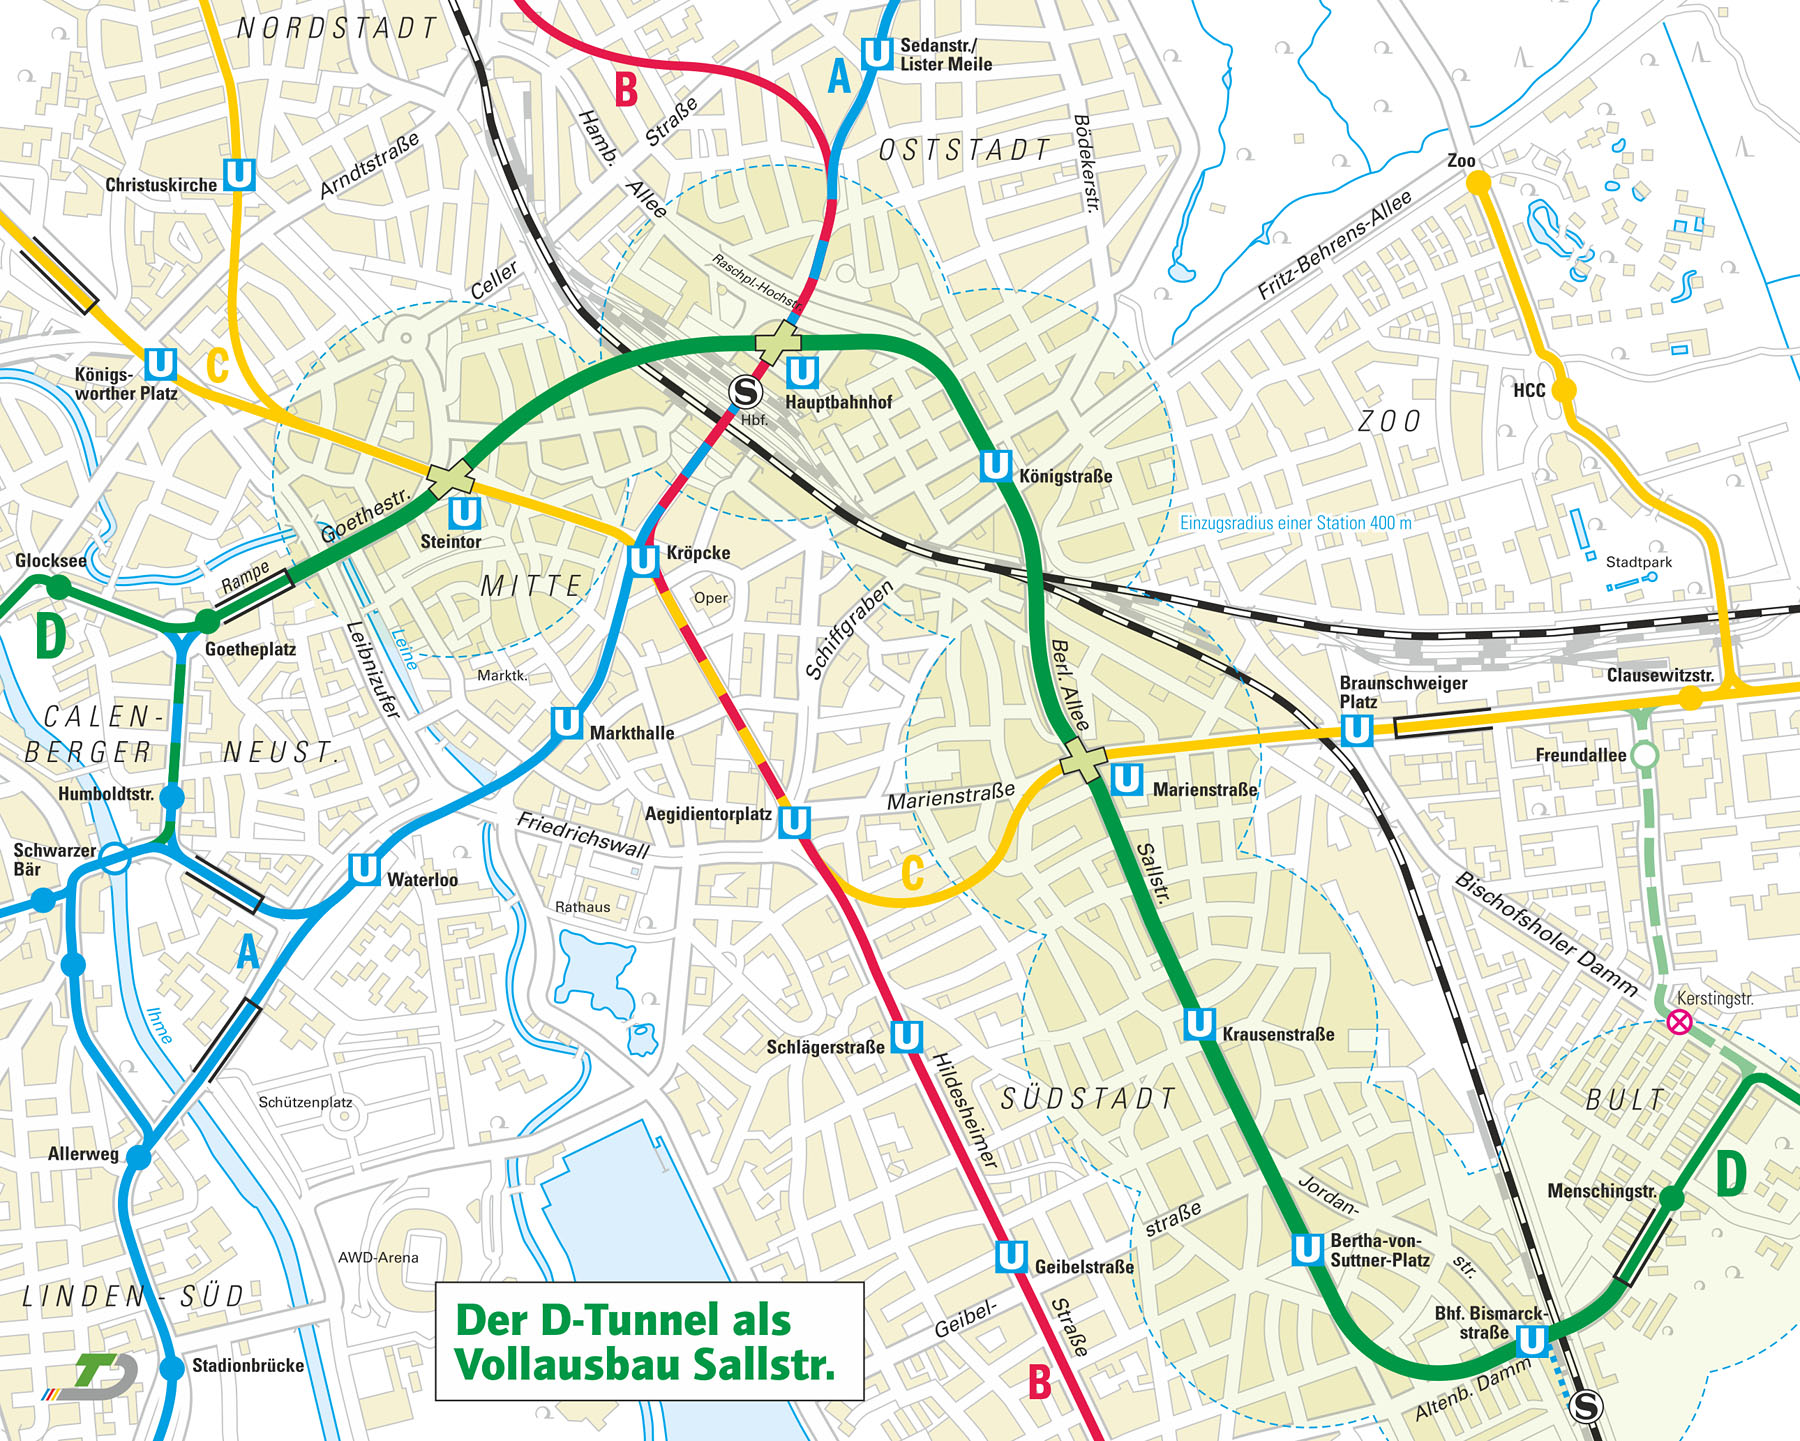 Karte des Vollausbaus des D-Tunnels in der Sallstraße